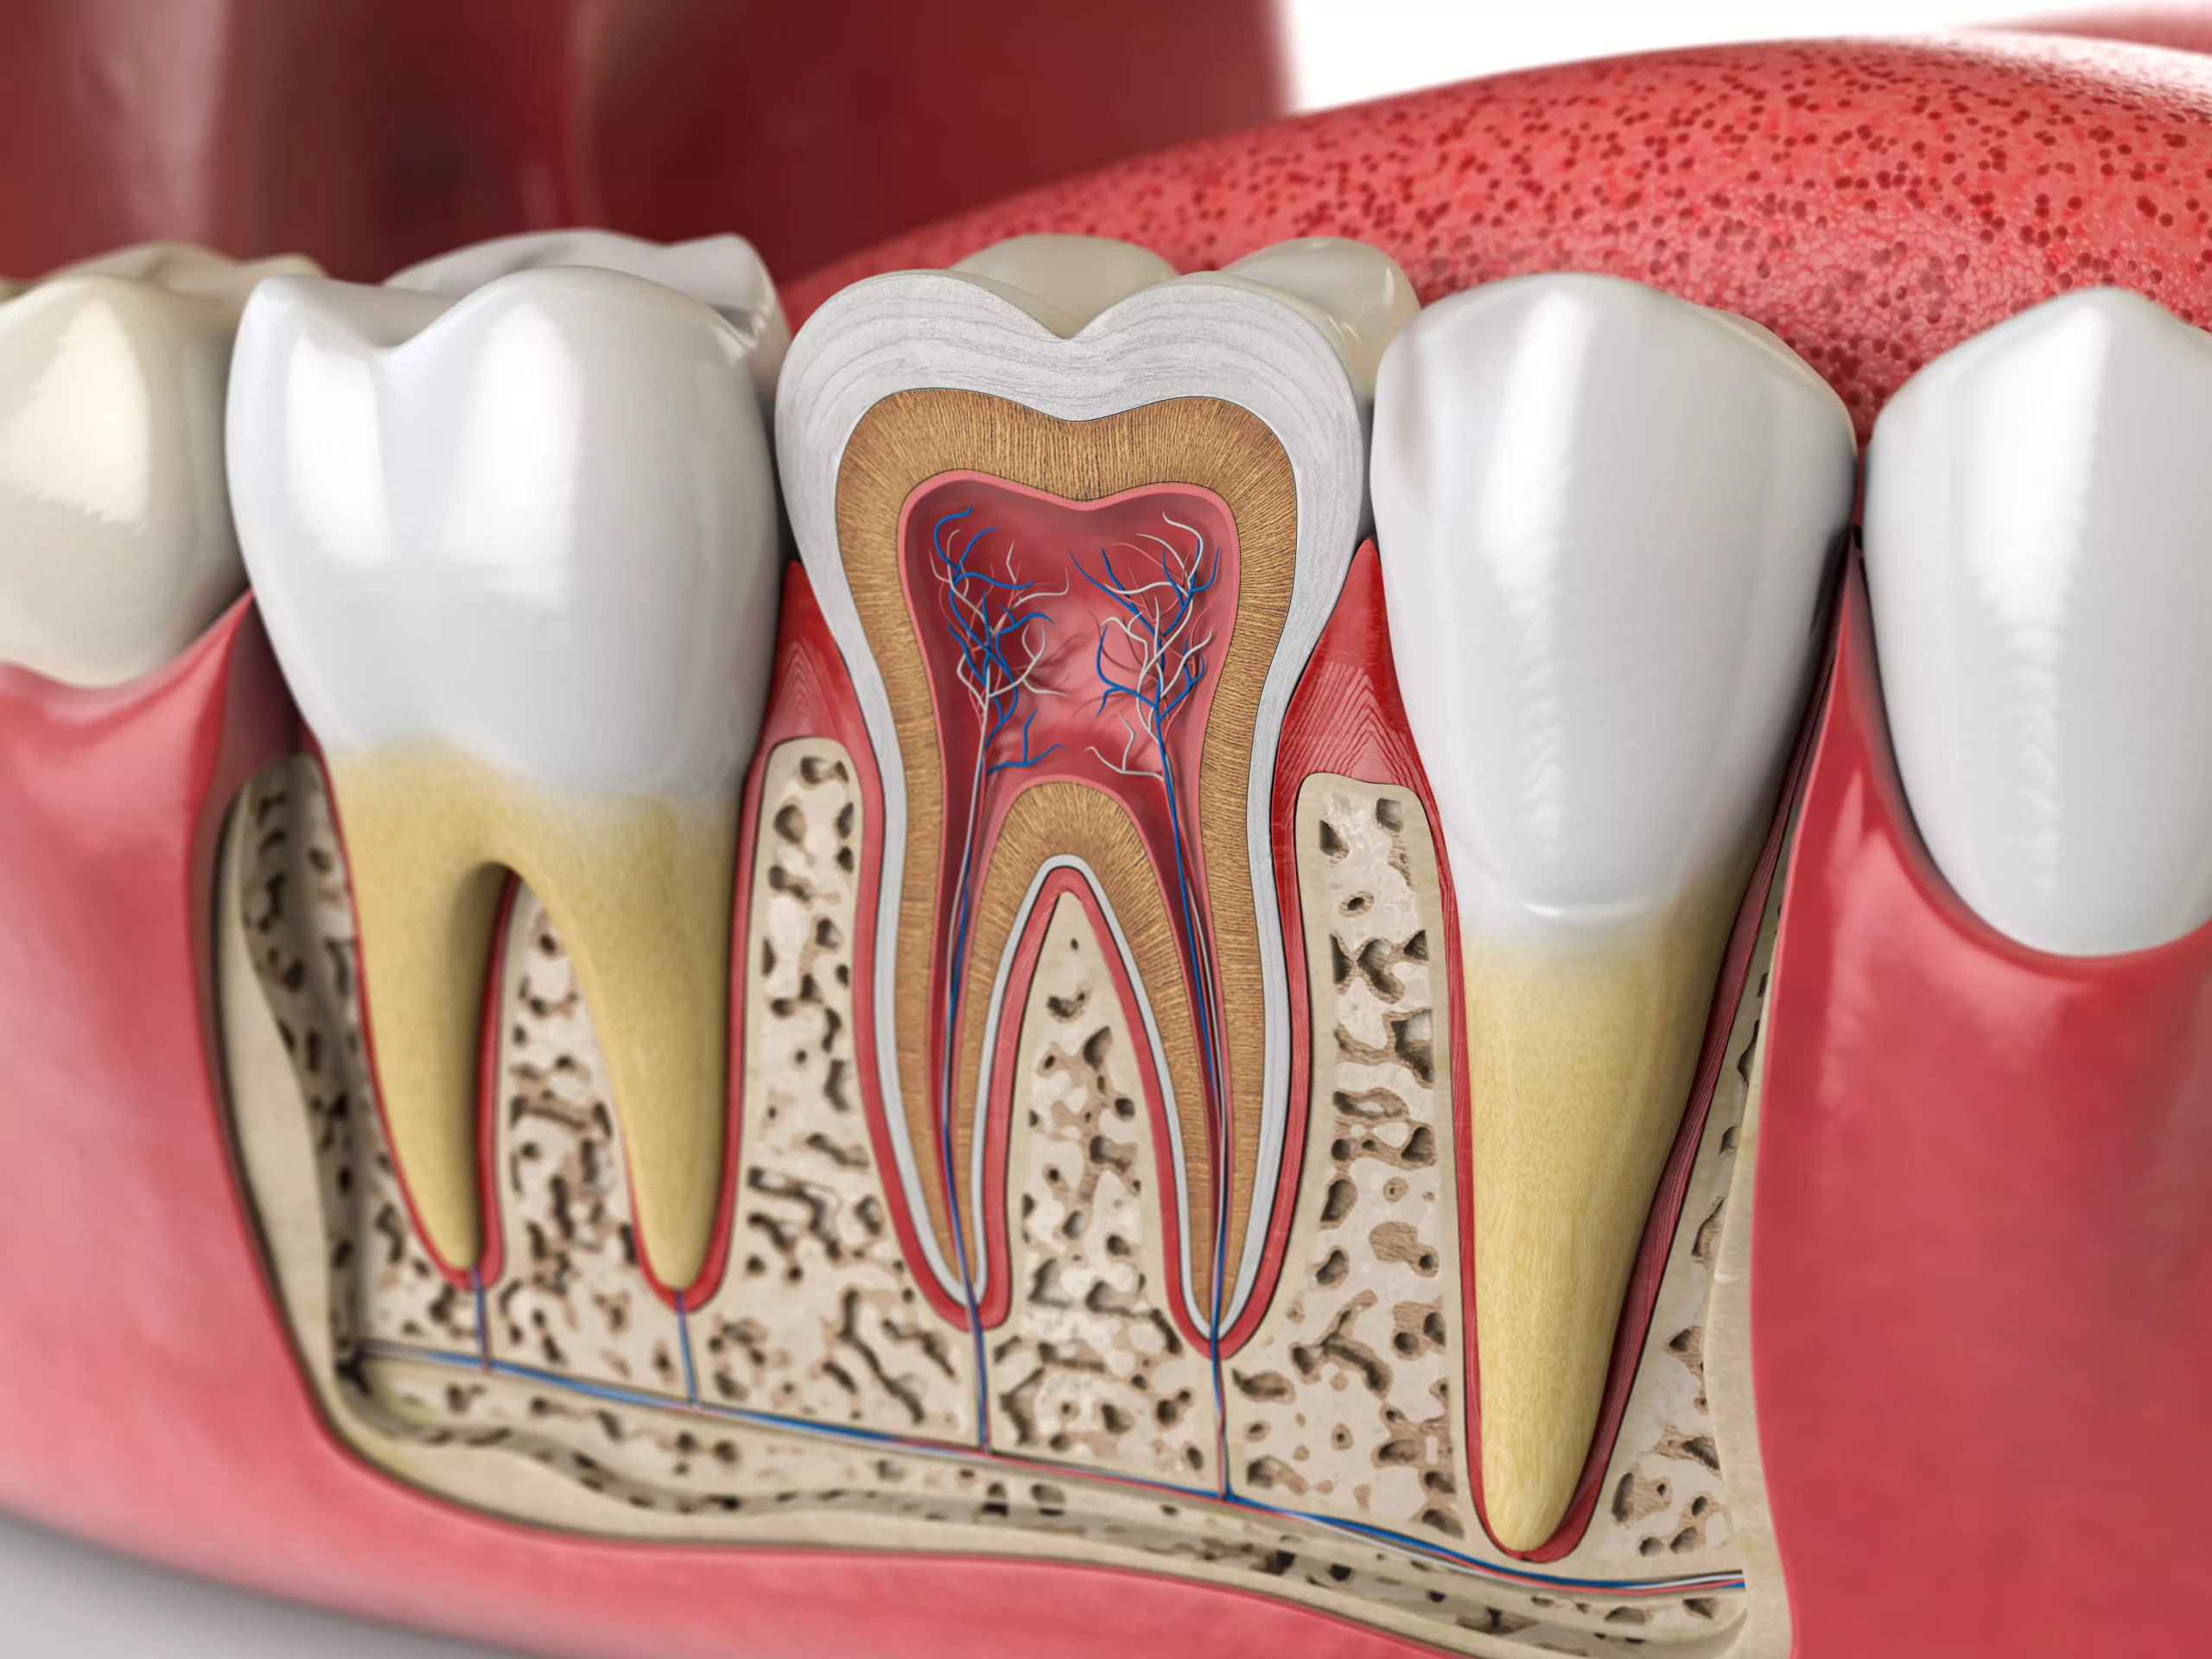 Querschnitt eines Zahns zur Verdeutlichung von Zahnentzündung